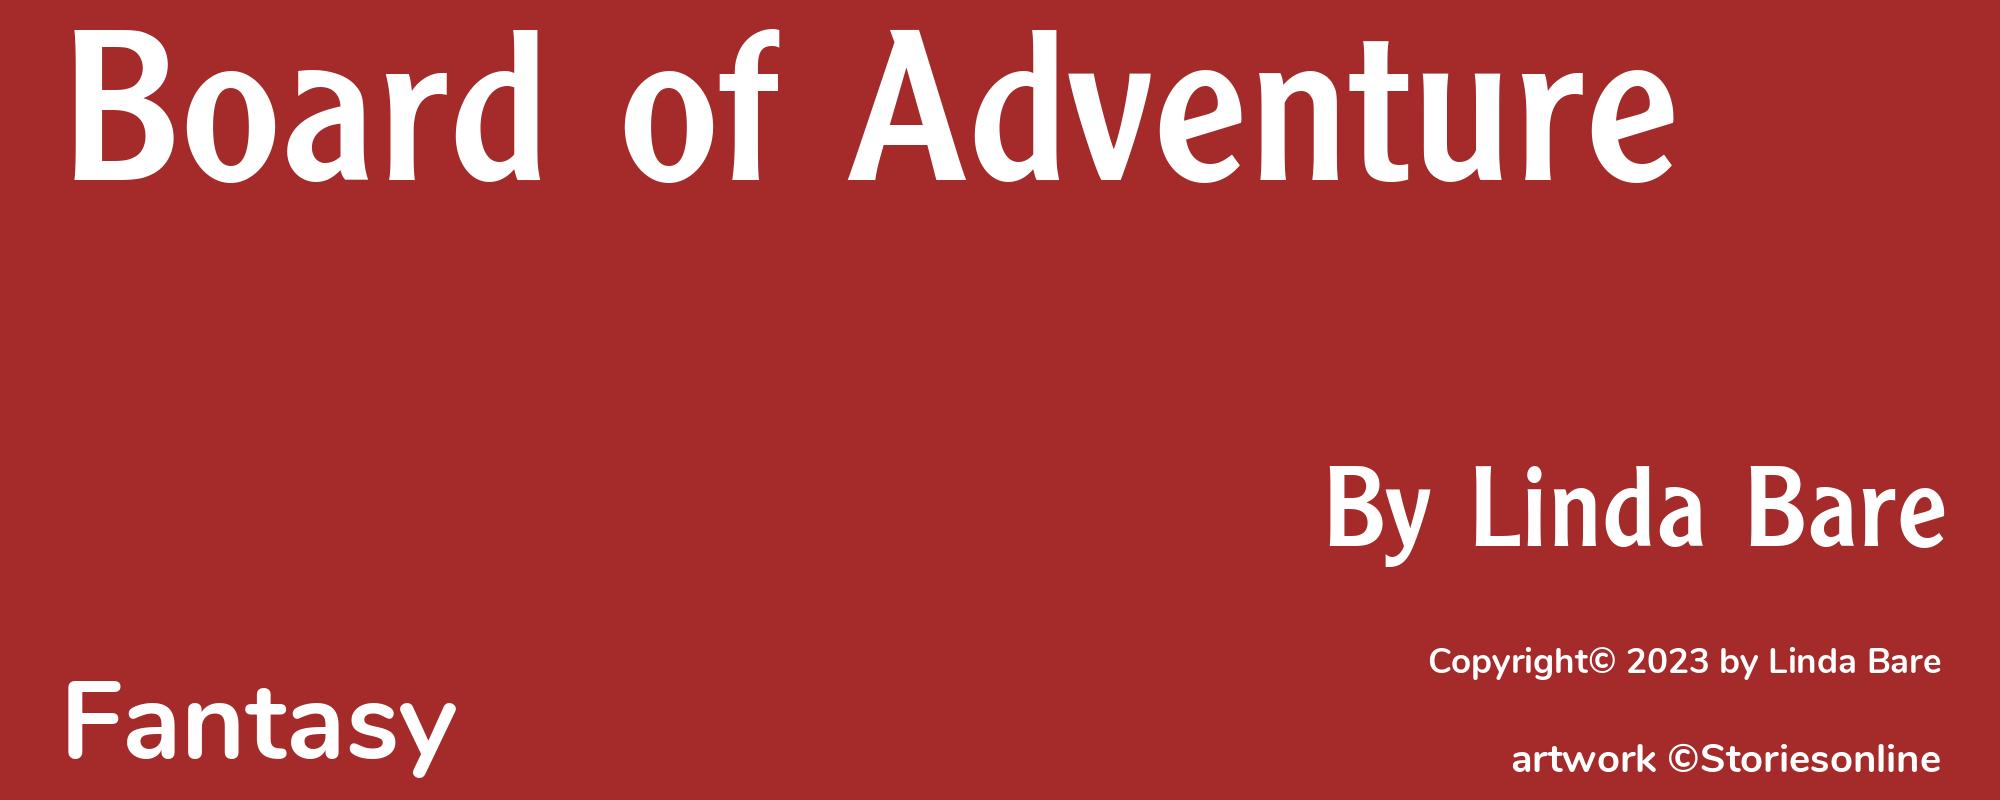 Board of Adventure - Cover